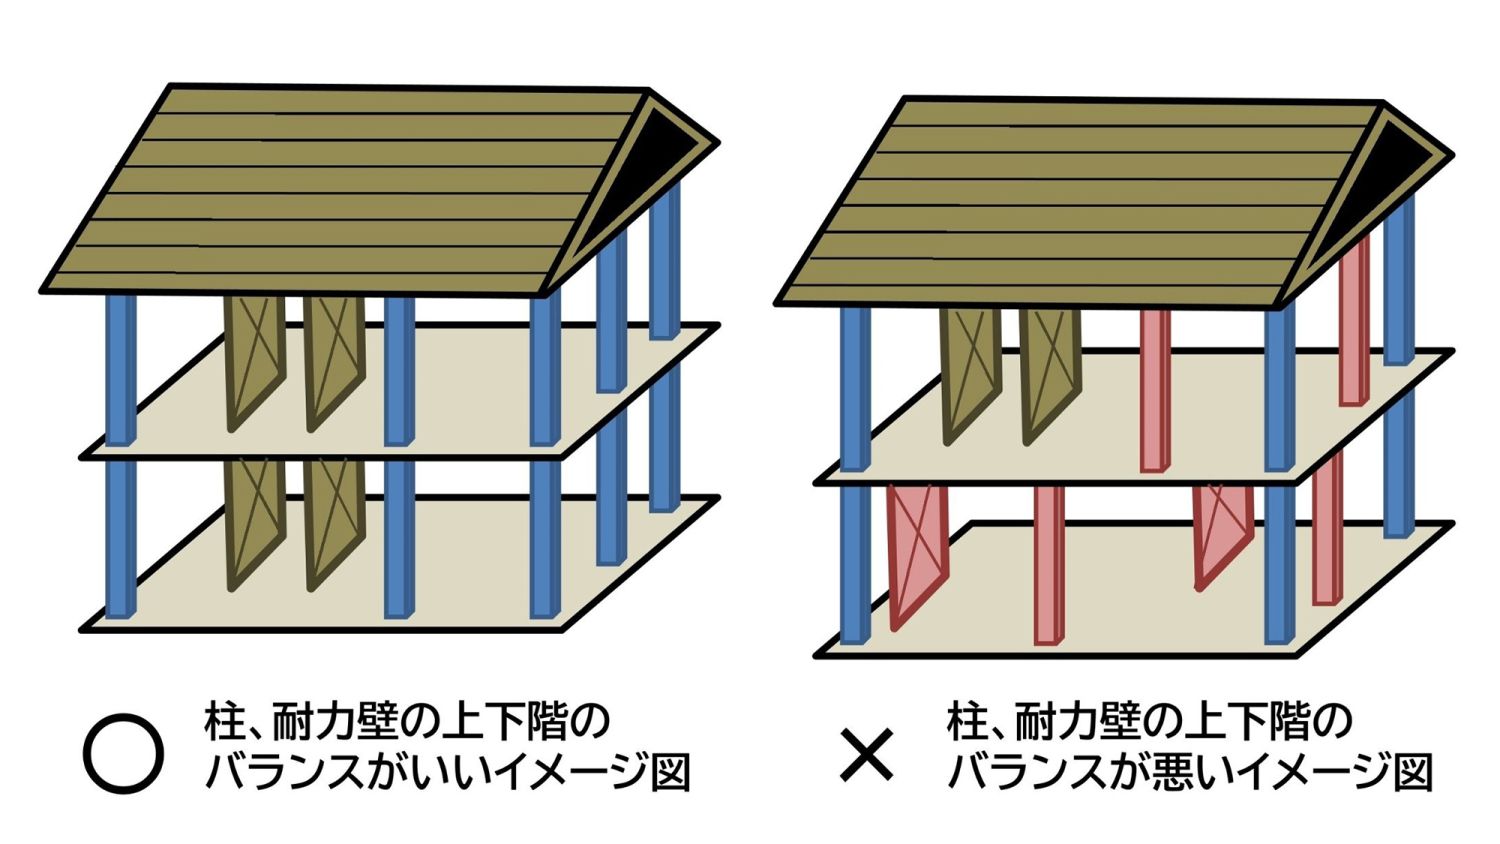 地震に強い家の特徴や構造と耐震等級